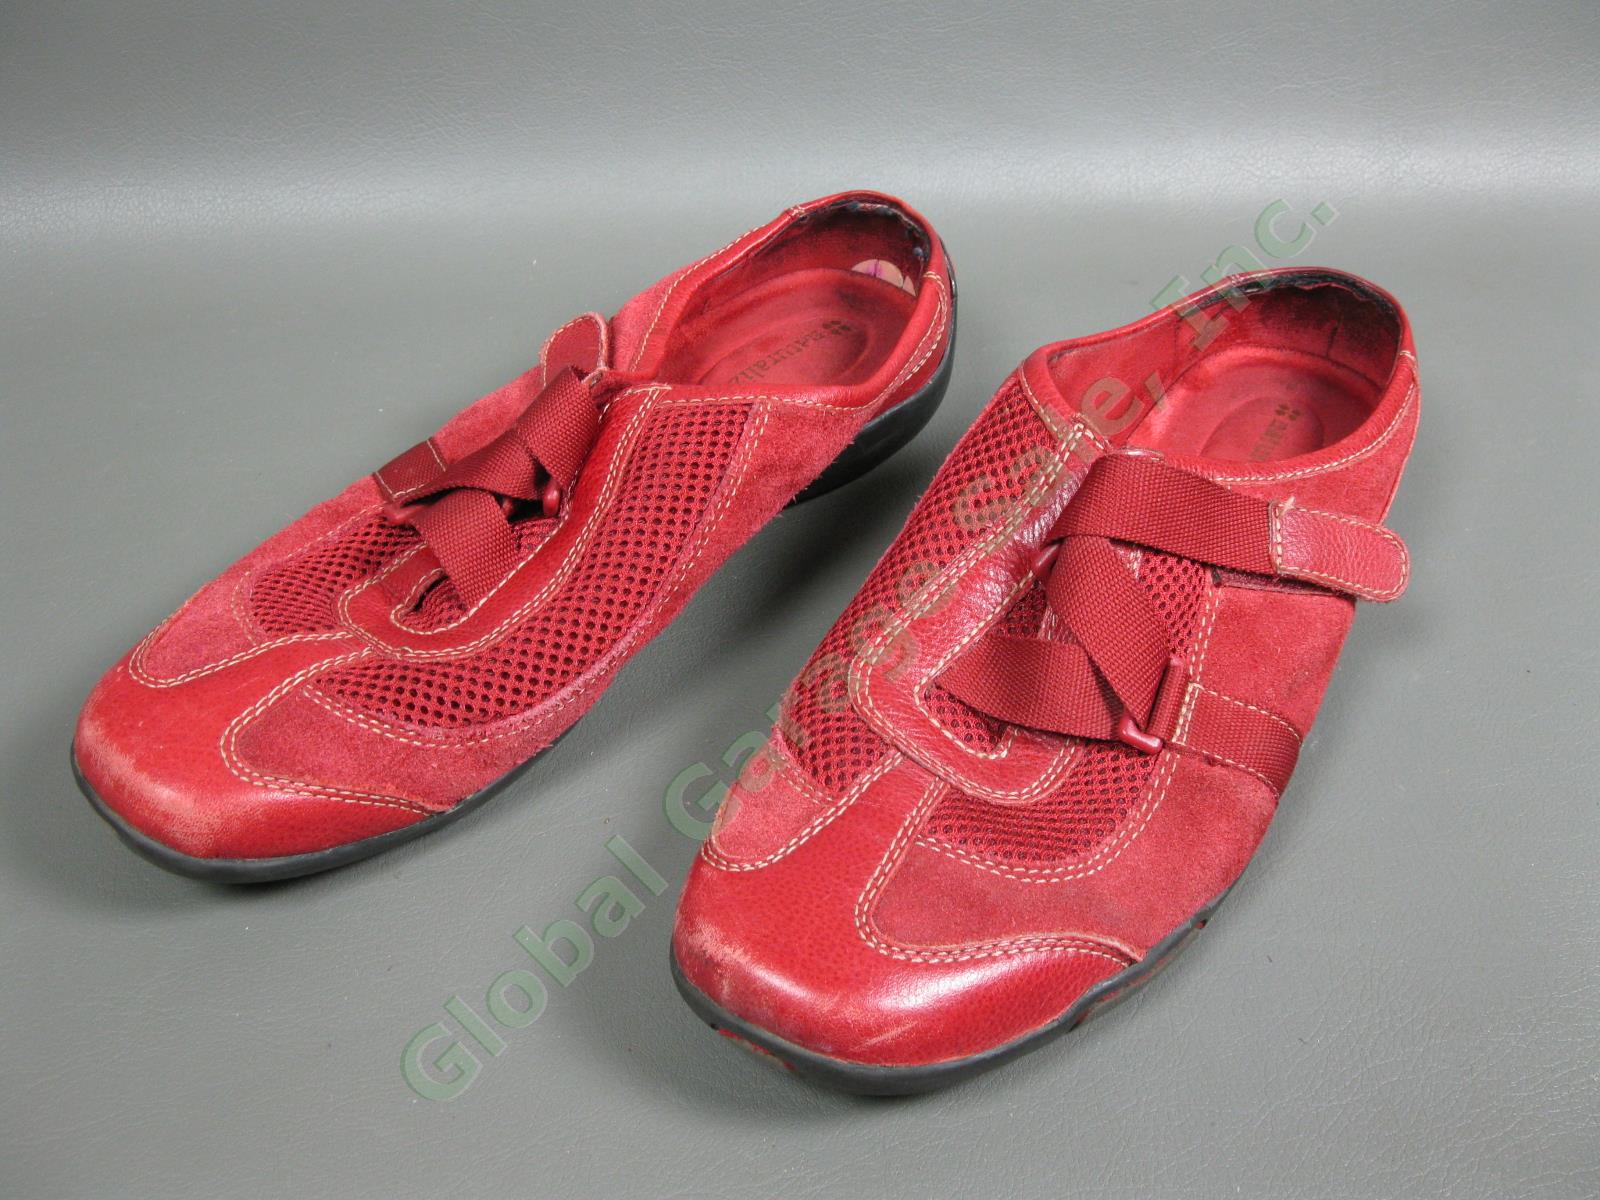 6 Pair Womens Walking Slip-In Sandal Size 8.5M-9M Shoe Lot Naturalizer Ryka Impo 6